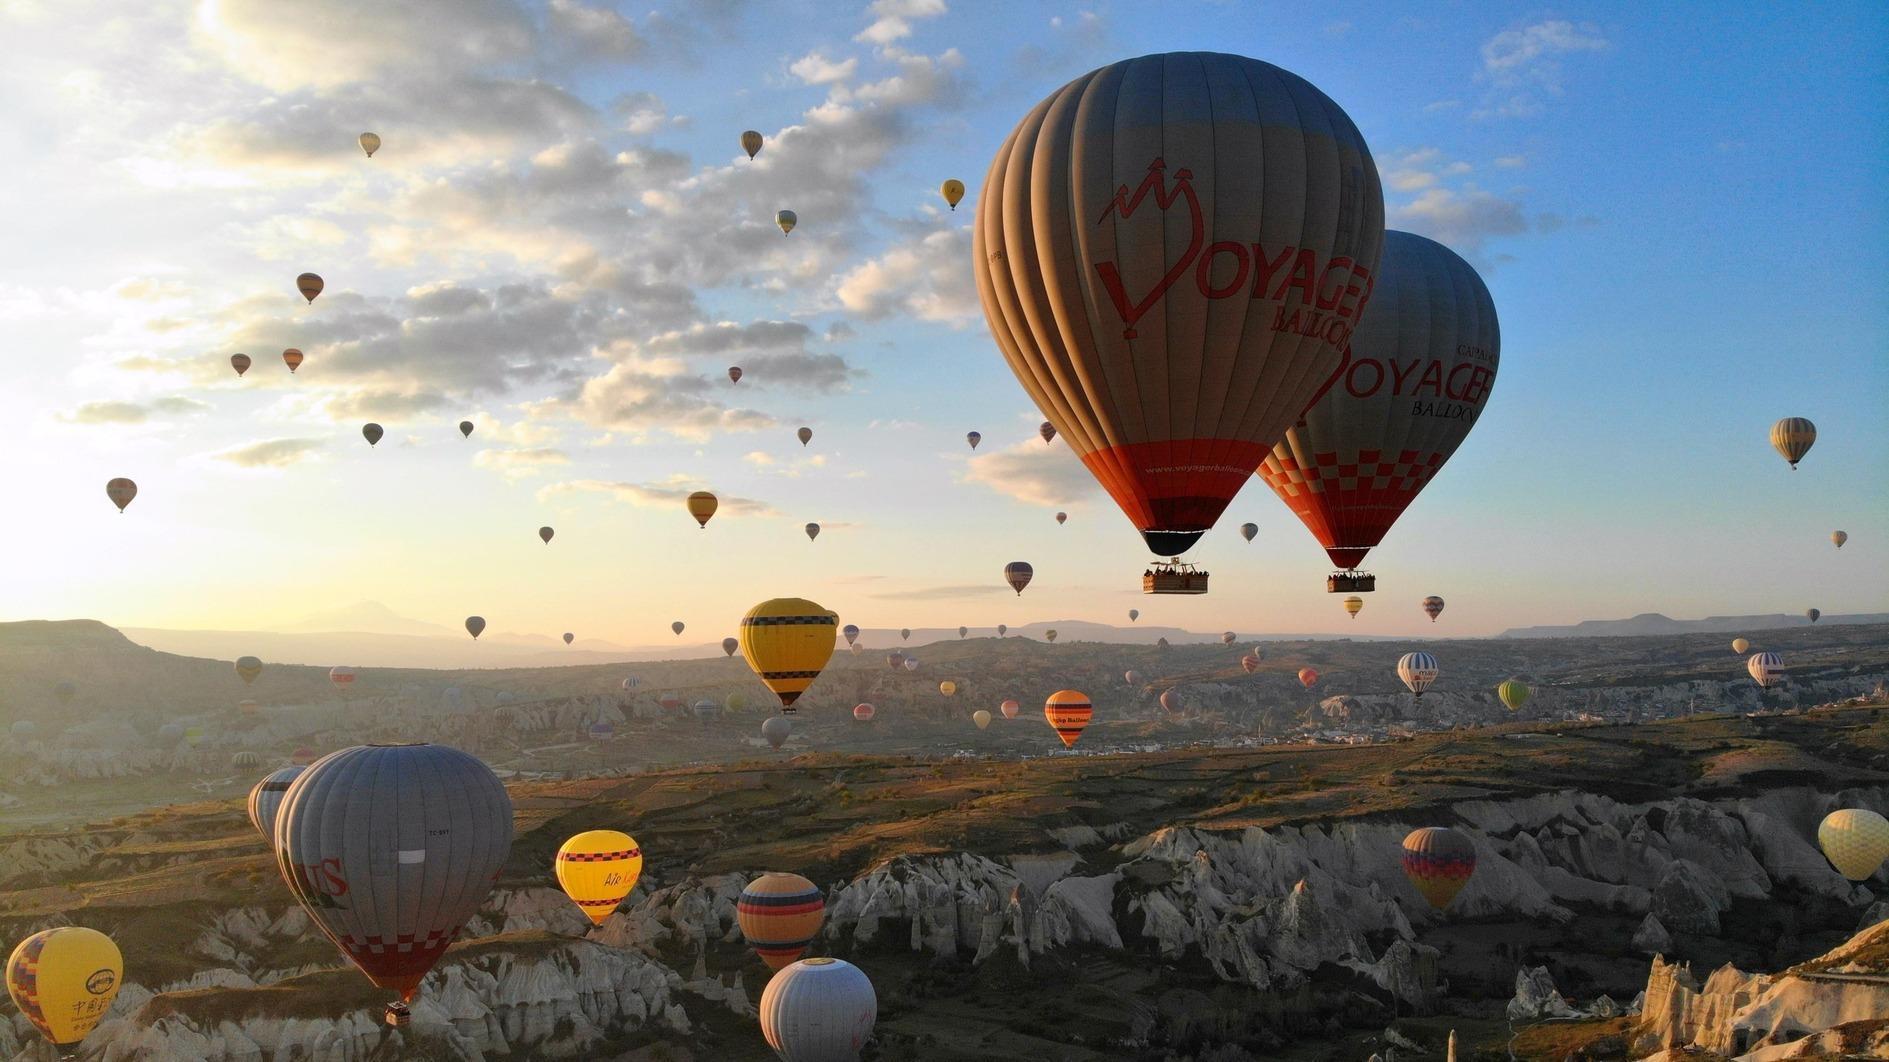 Türkiye is wereldwijd toonaangevend op het gebied van luchtballonvaarten